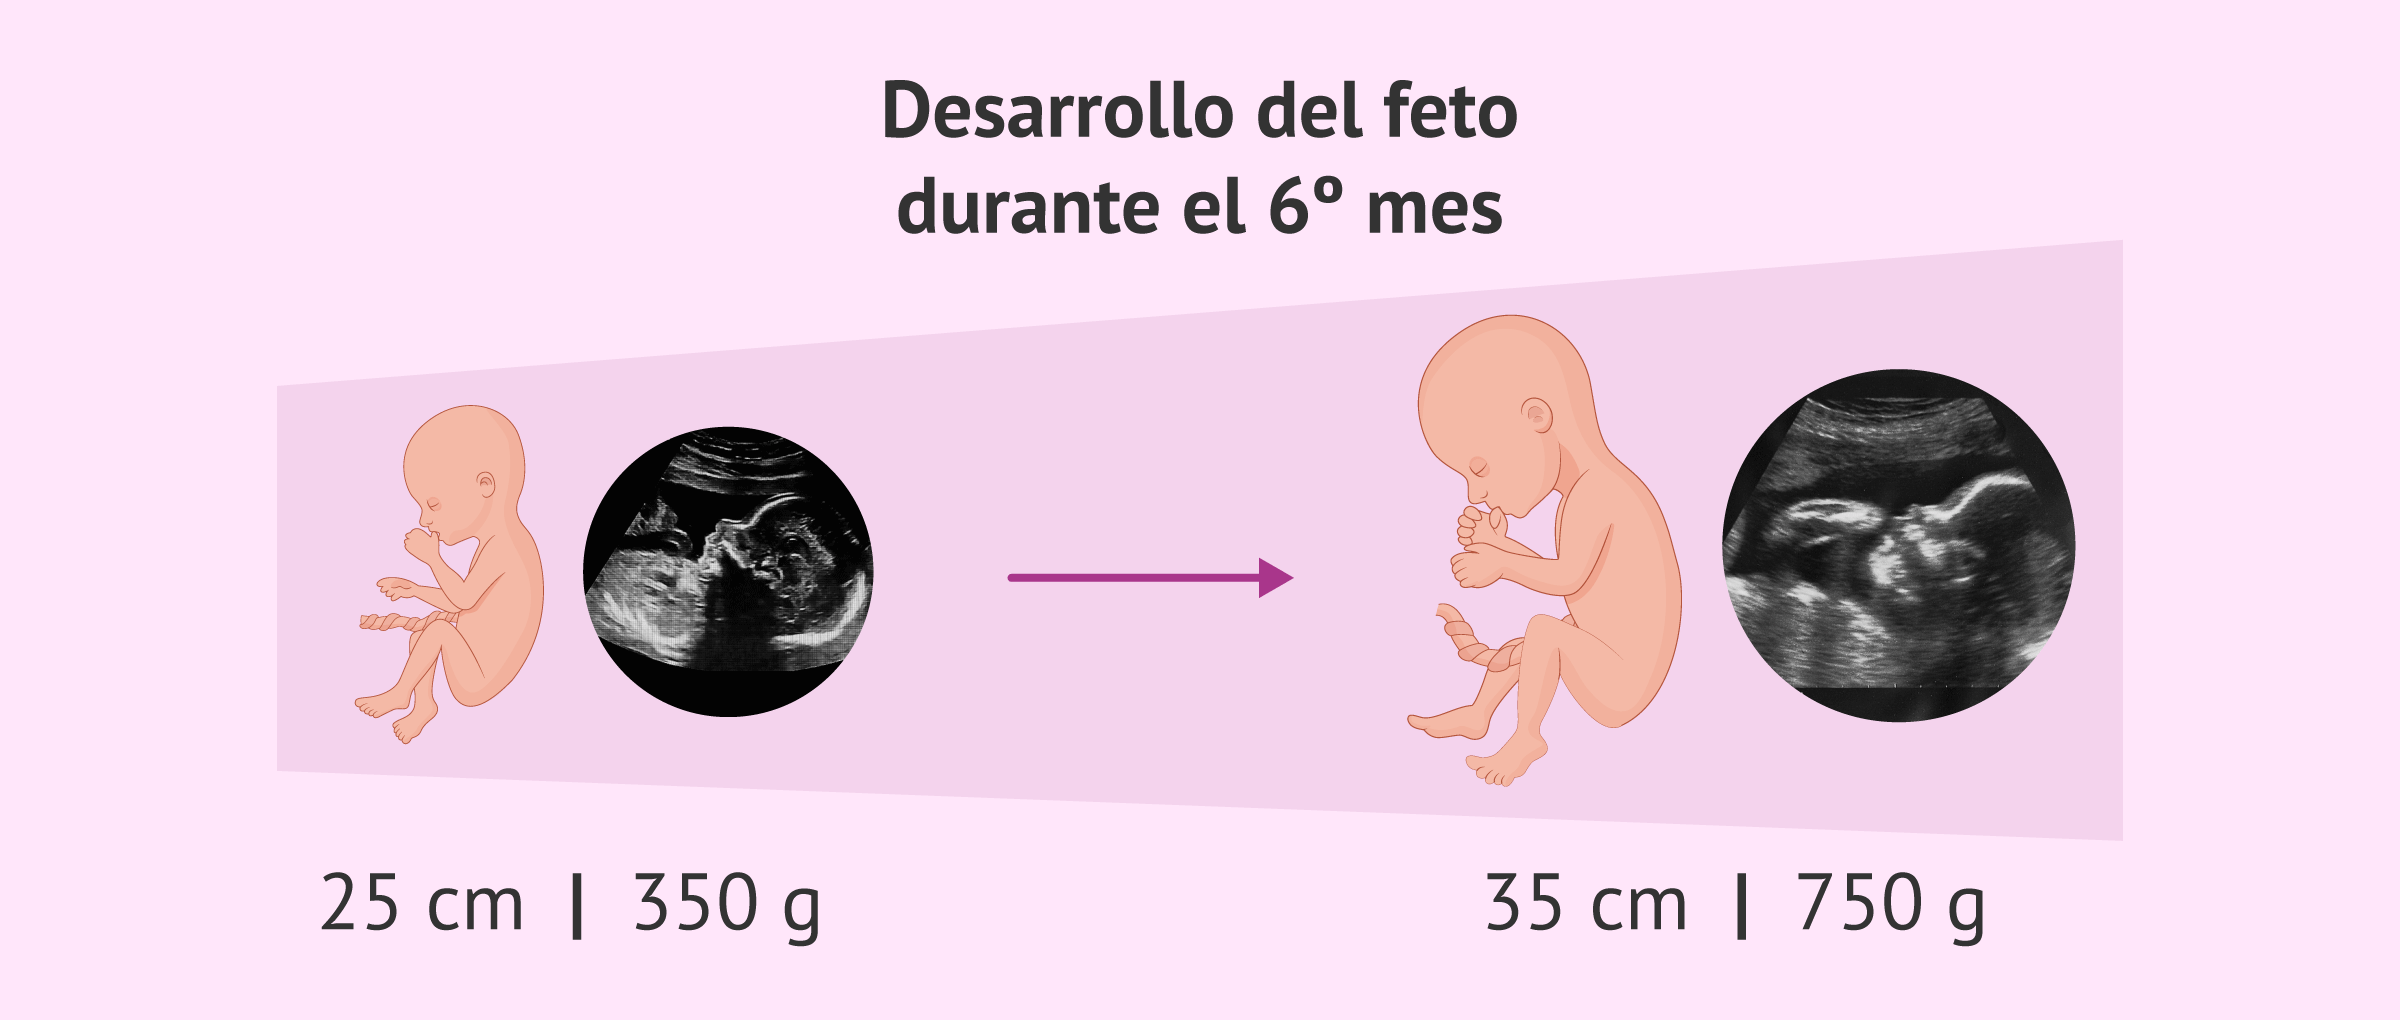 Desarrollo del feto durante el sexto mes de embarazo